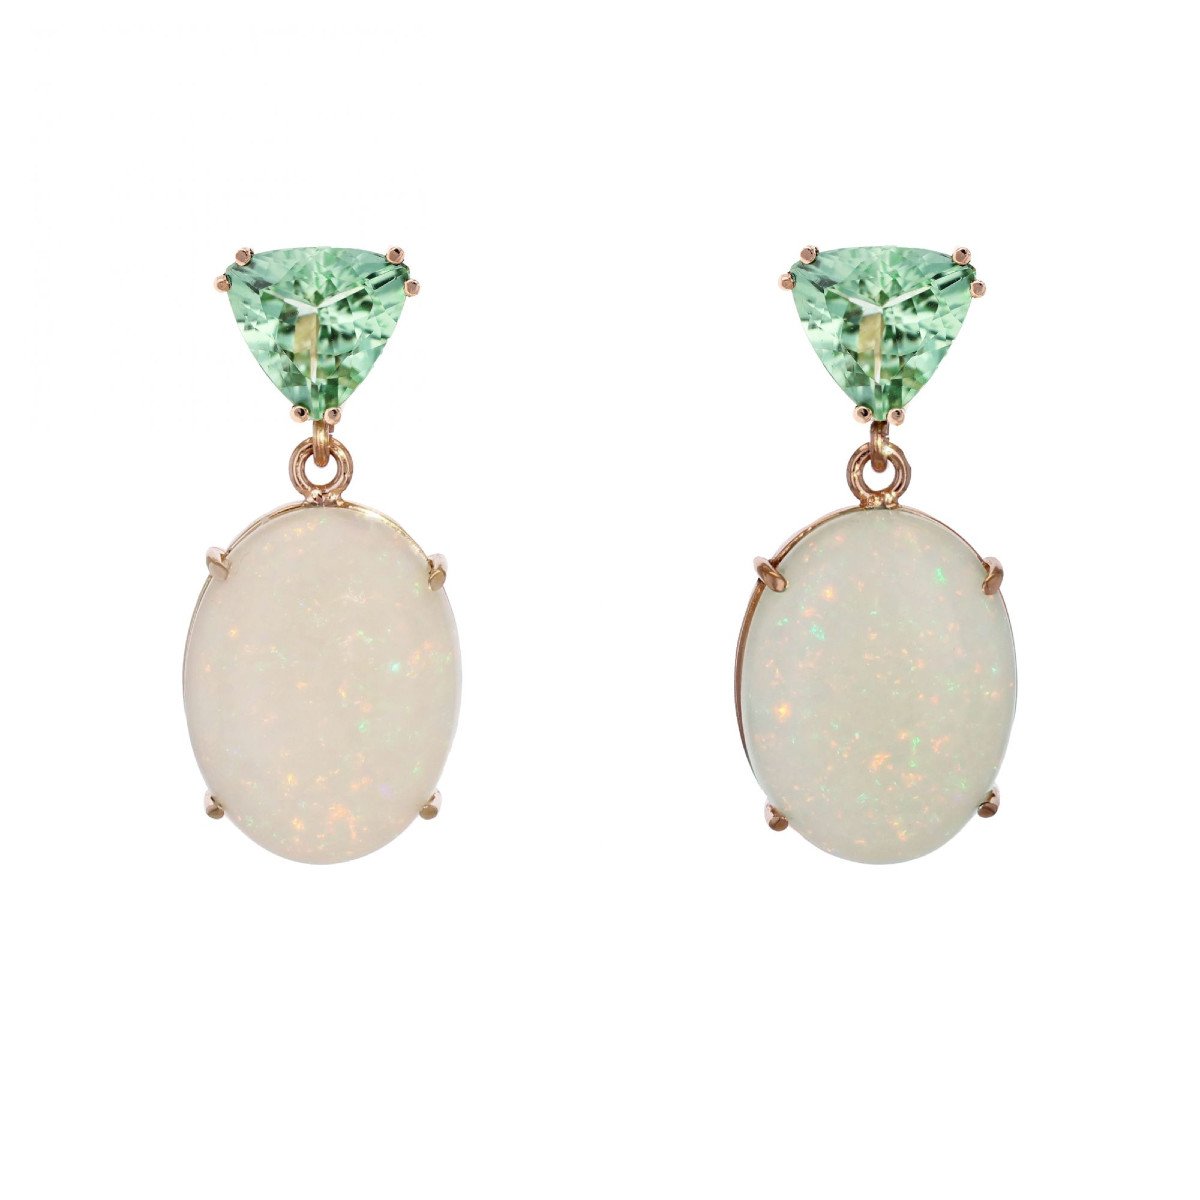 Mint Garnet And Australian Opal Earrings